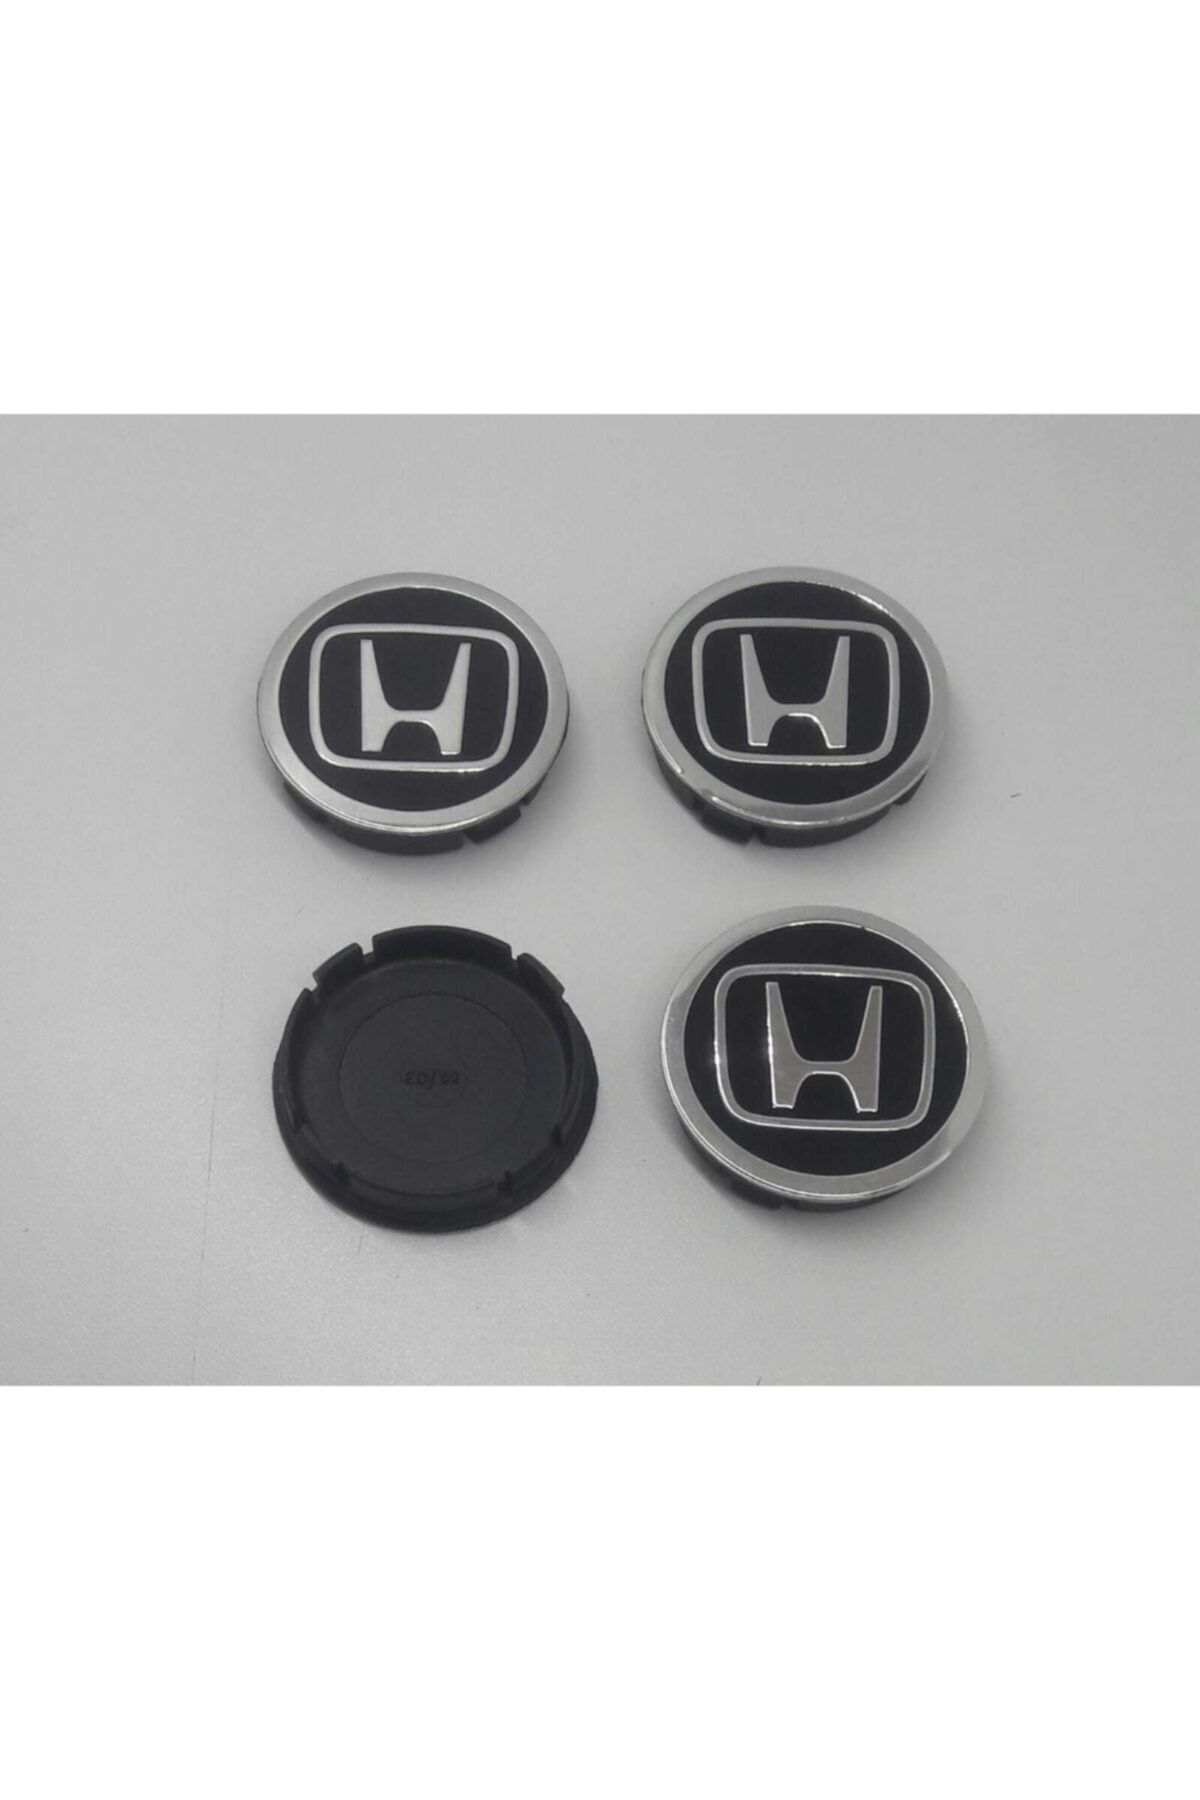 Honda Jant Göbeği 55/60 (55mm Yuva) 4lü Set